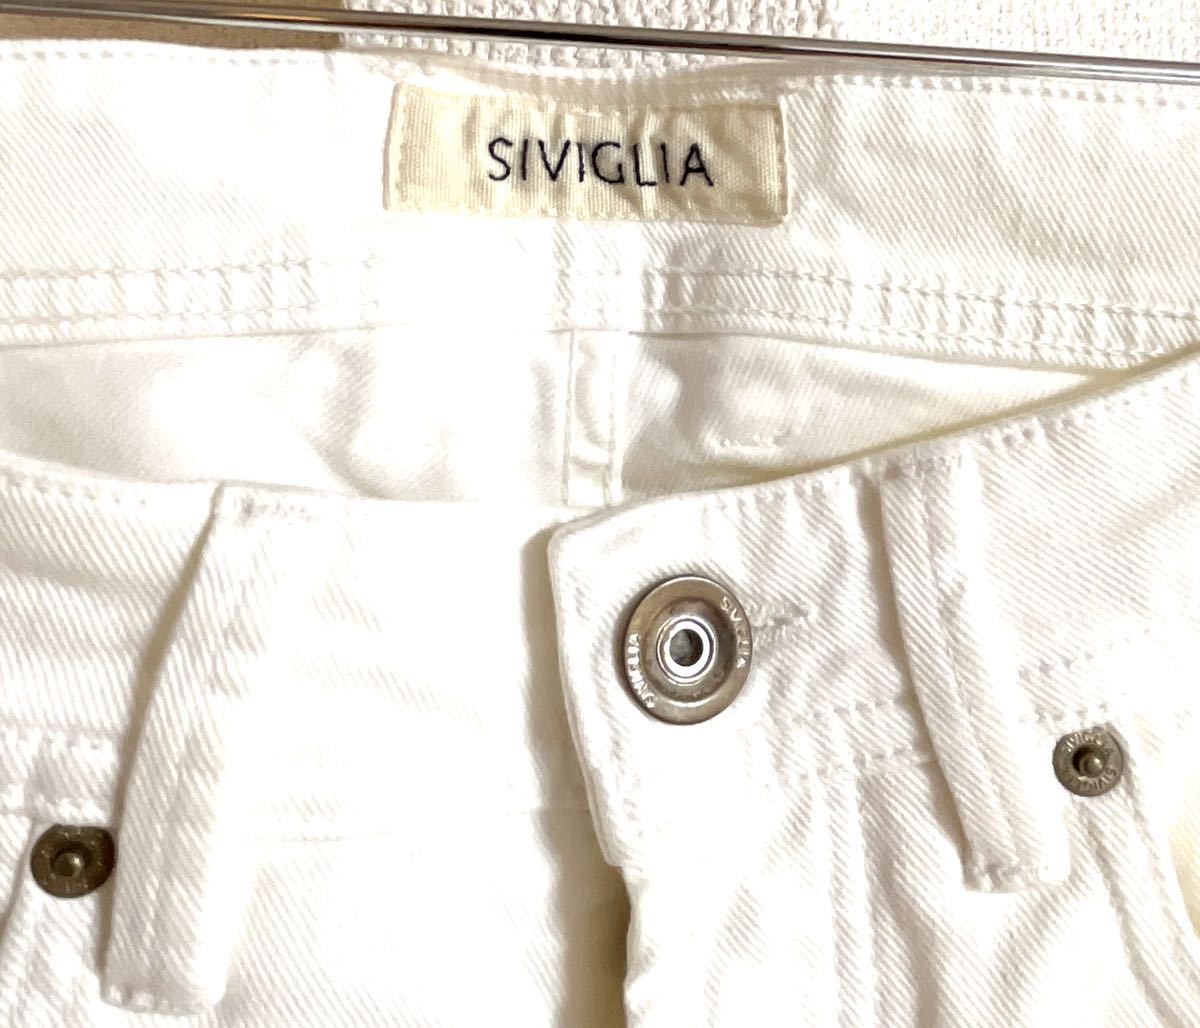 美品 SIVIGLIA シビリア Made In Italy size 31 ホワイトデニム スリム ストレッチ カラー パンツ イタリア製